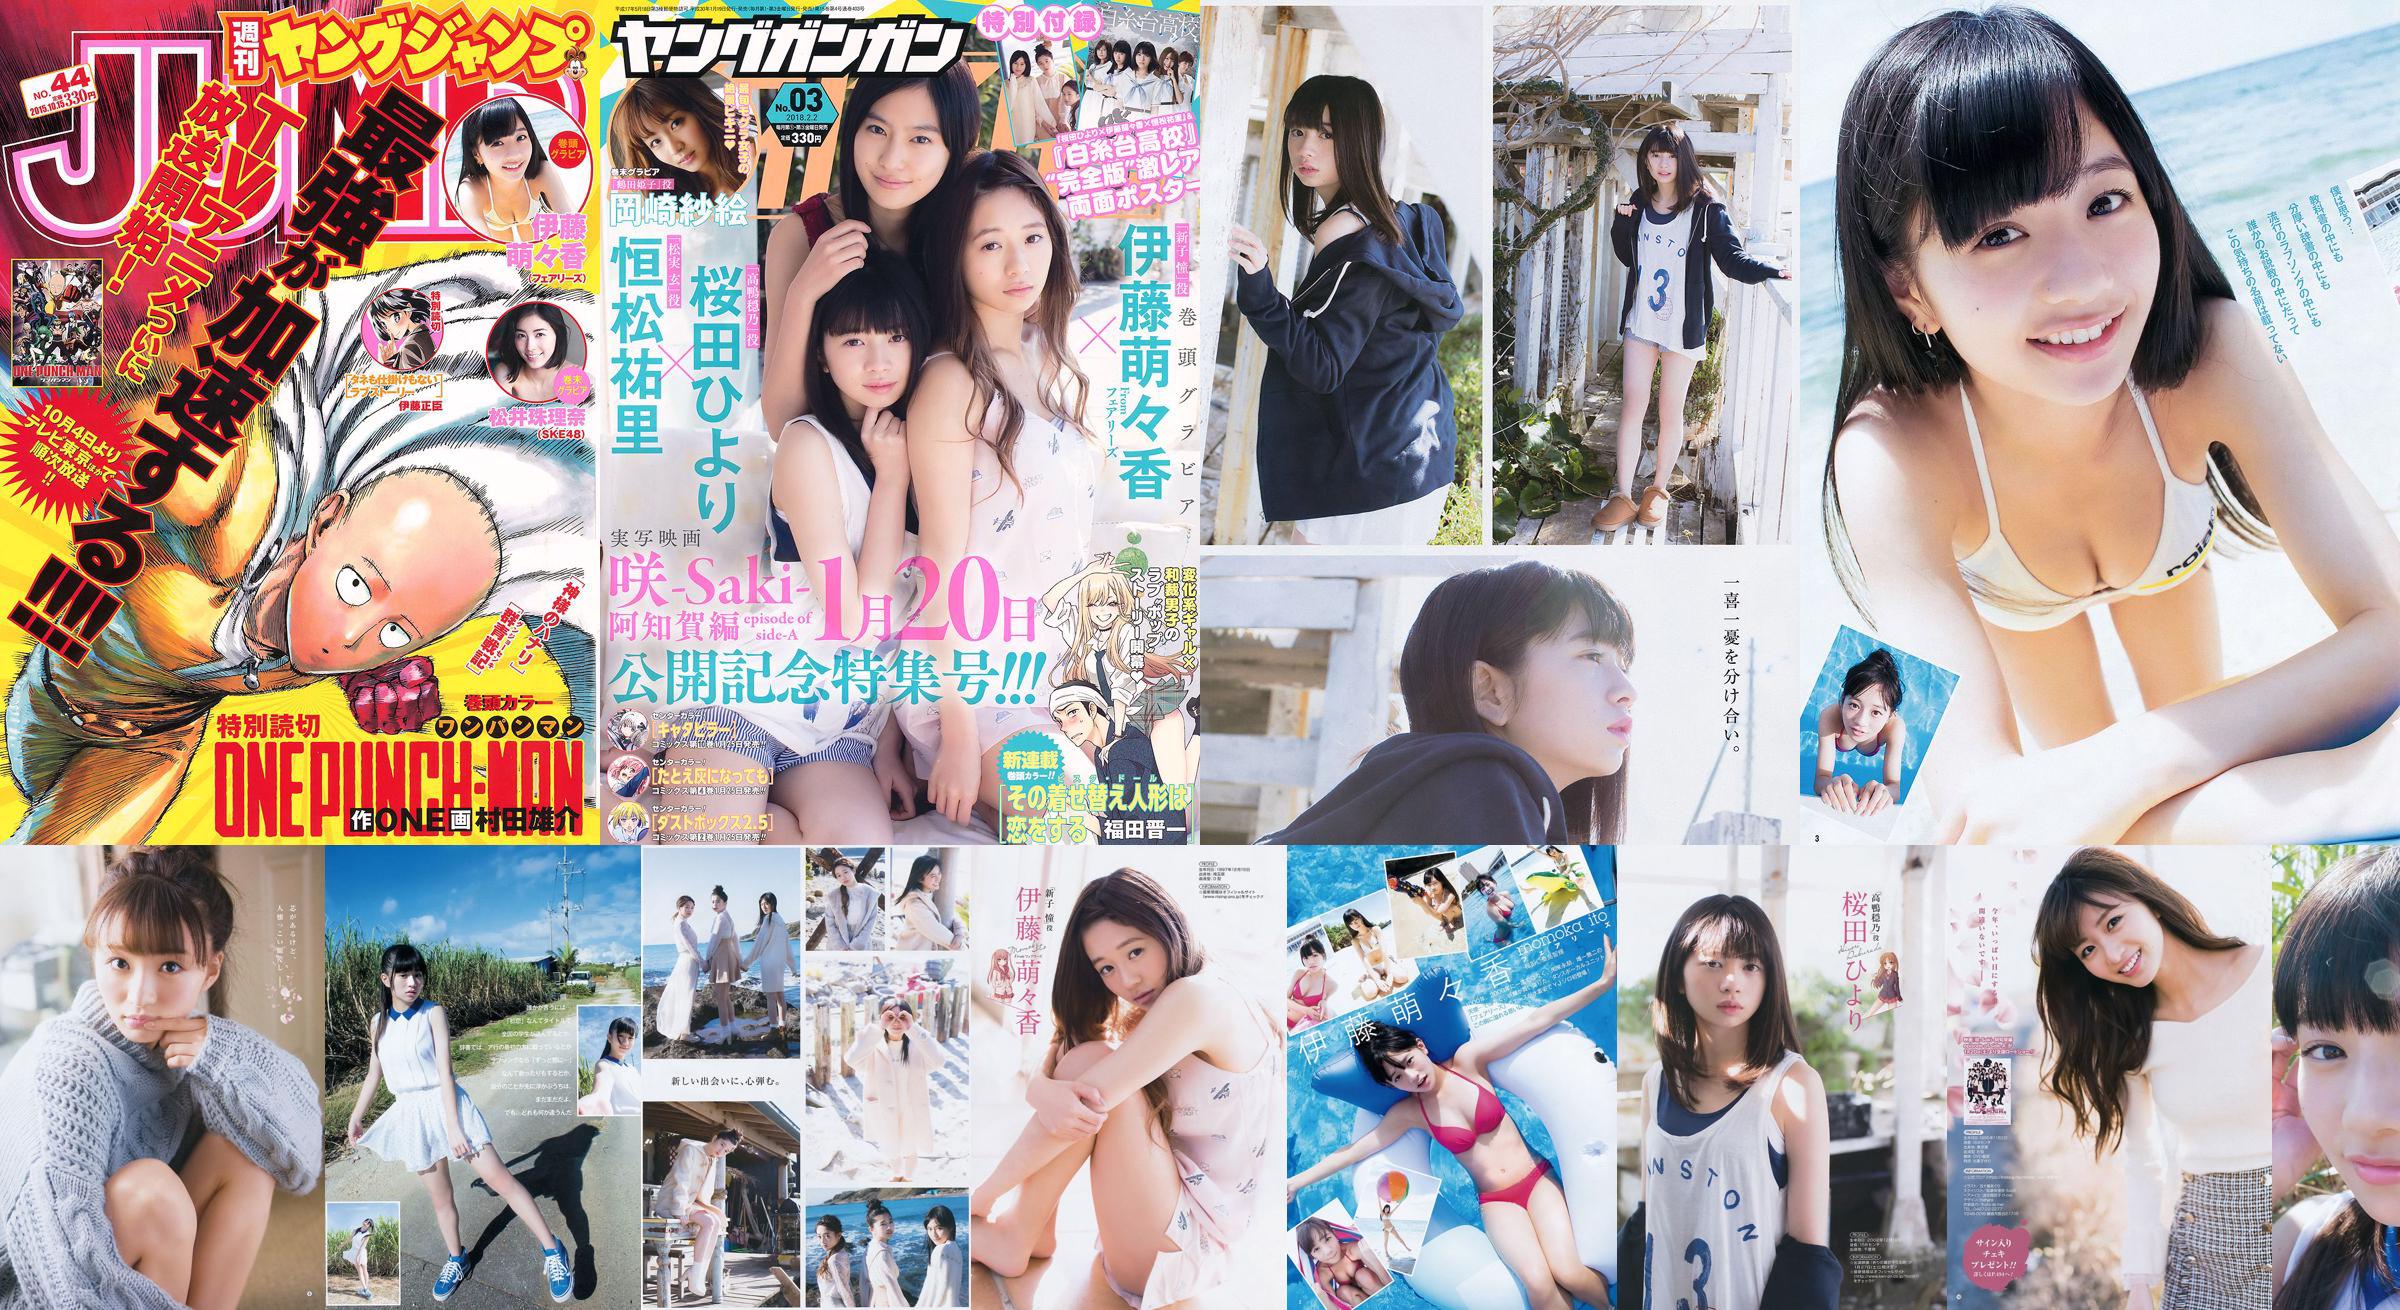 Momoka Ito Jurina Matsui [Weekly Young Jump] 2015 No.44 Photograph No.93a388 Page 2